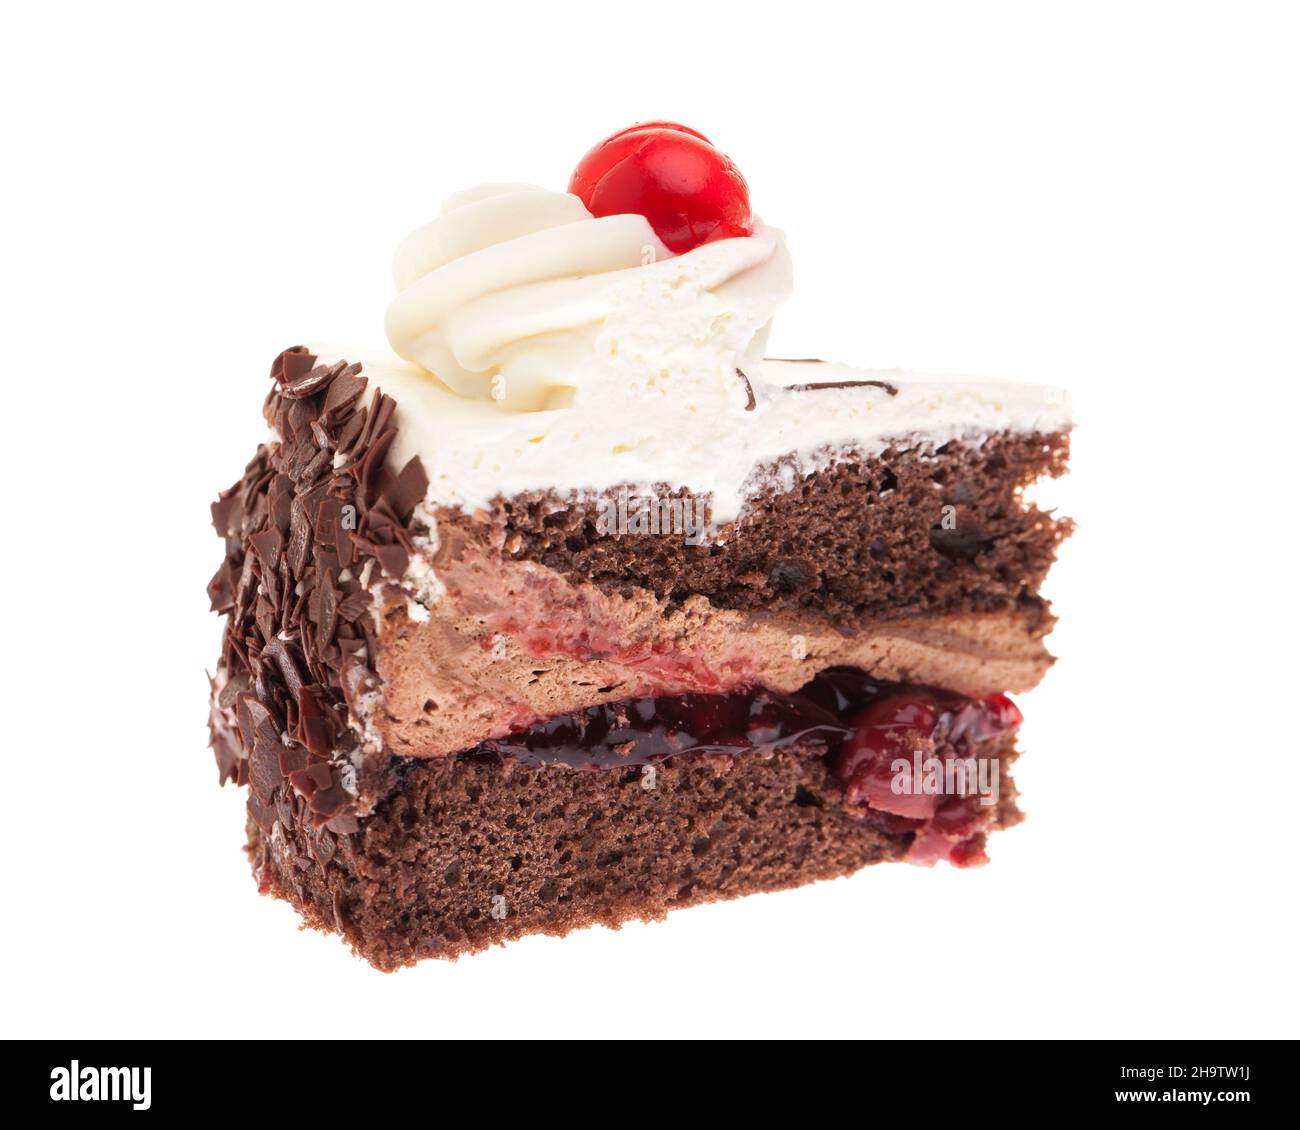 Pie, piece, cream, chocolate, piece of cake, piece of cake, chocolate cake, cream cake, cherries, cherry pie, cake, white, genuine, fresh, standing, o Stock Photo